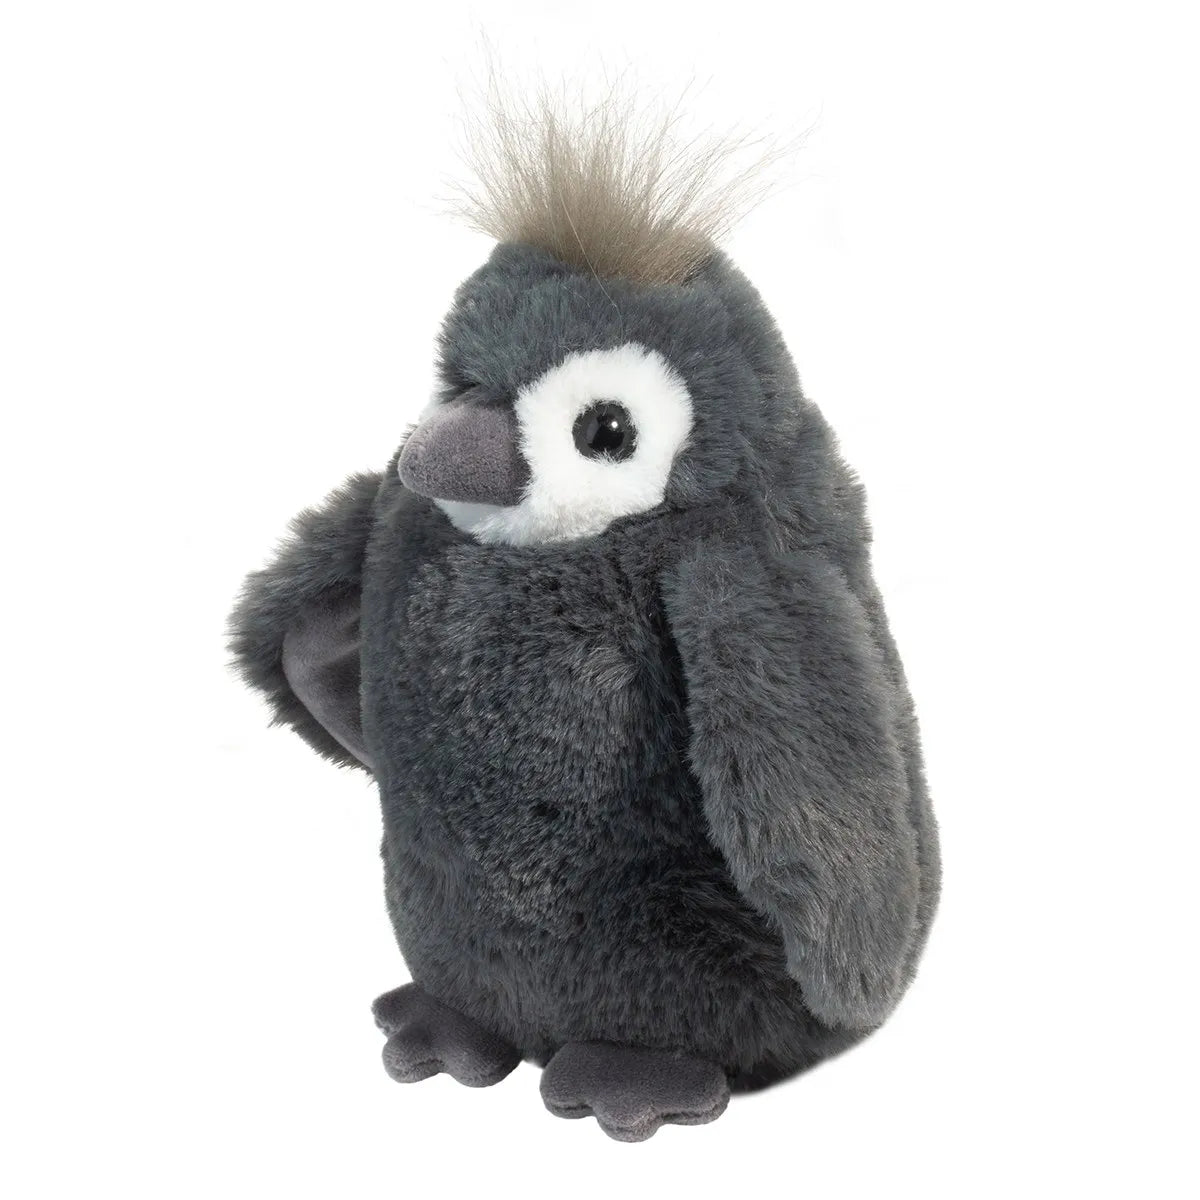 Perrie Penguin Mini Softie